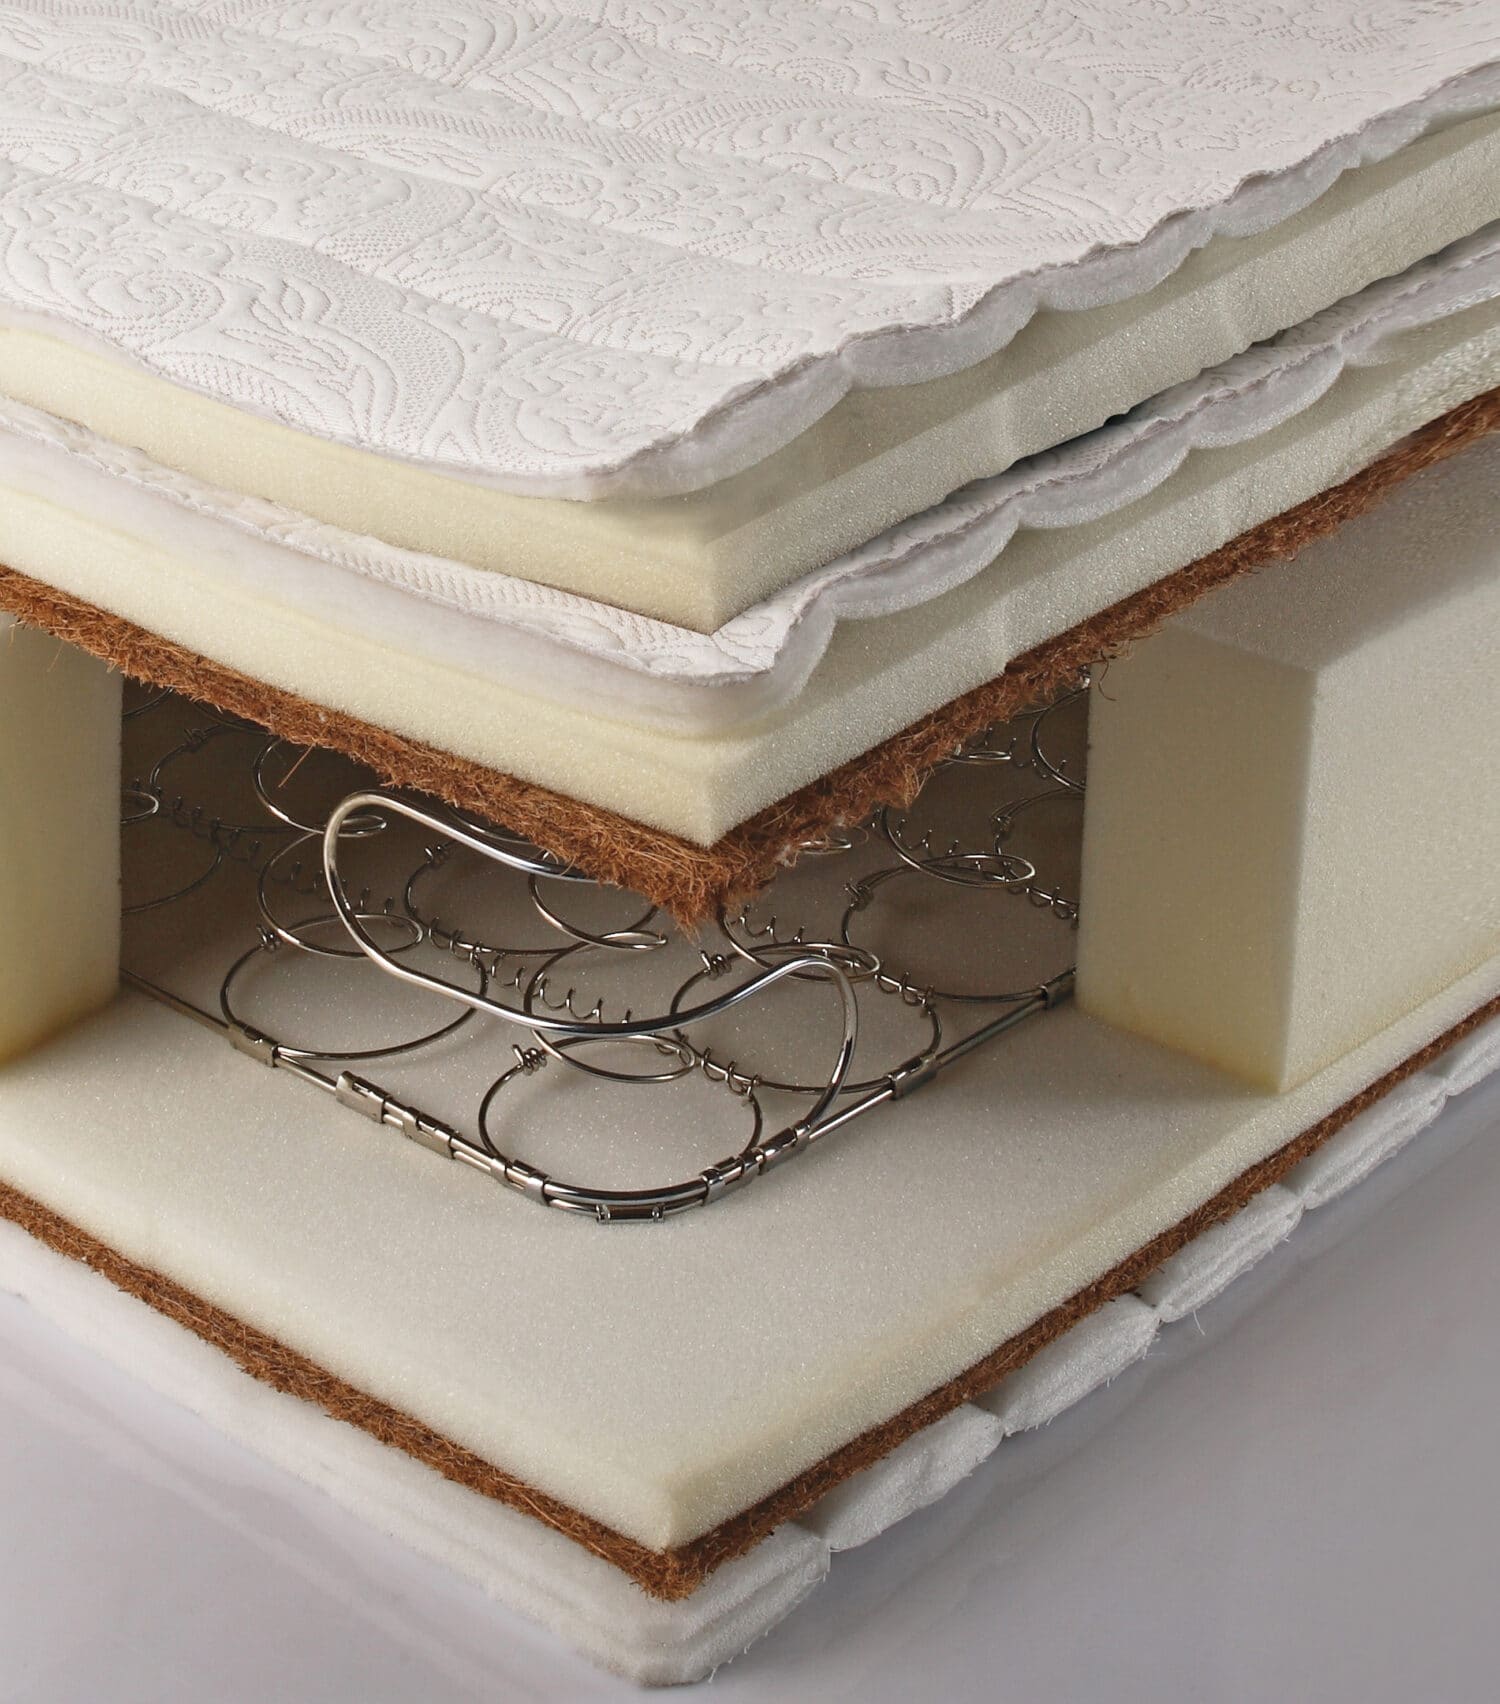 Internal view of mattress structure